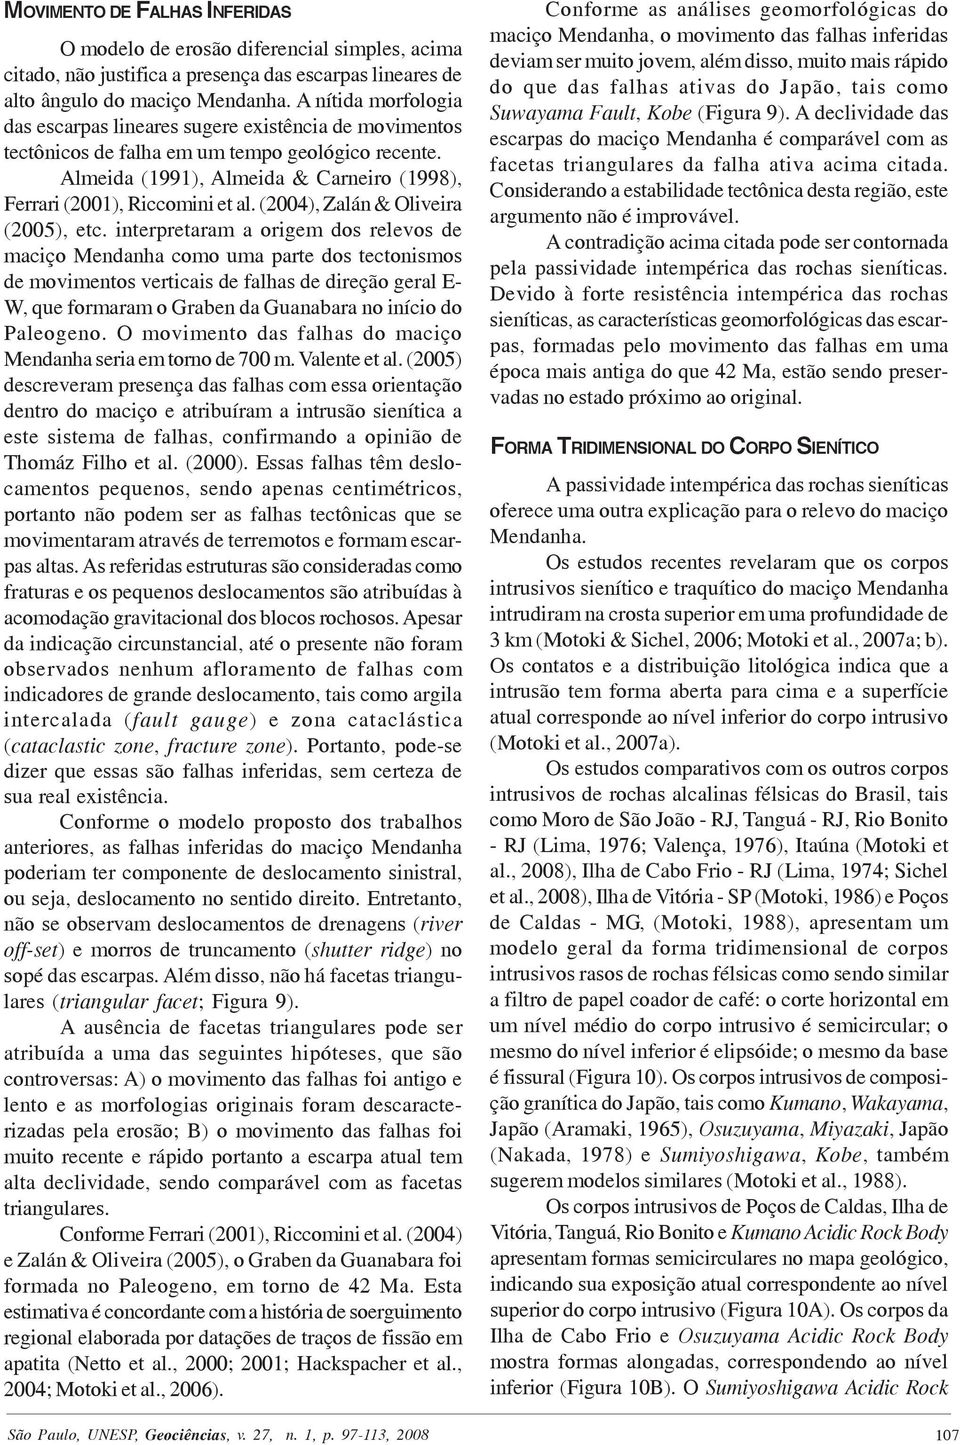 (2004), Zalán & Oliveira (2005), etc.